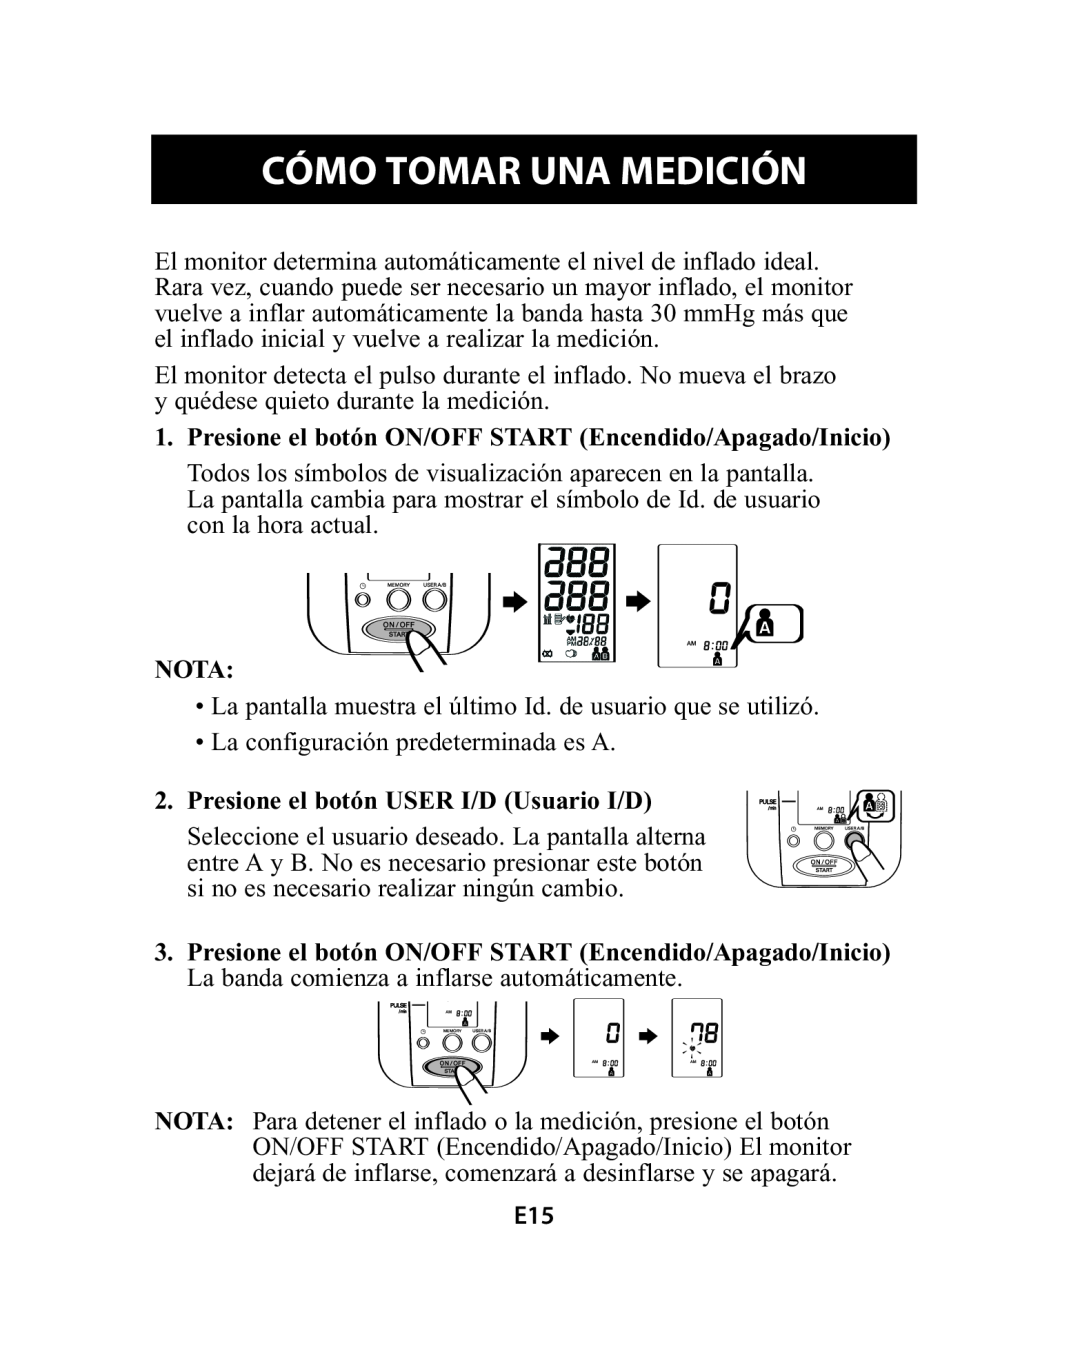 Omron Healthcare HEM-741CREL manual Cómo Tomar Una Medición, Presione el botón ON/OFF START Encendido/Apagado/Inicio, Nota 